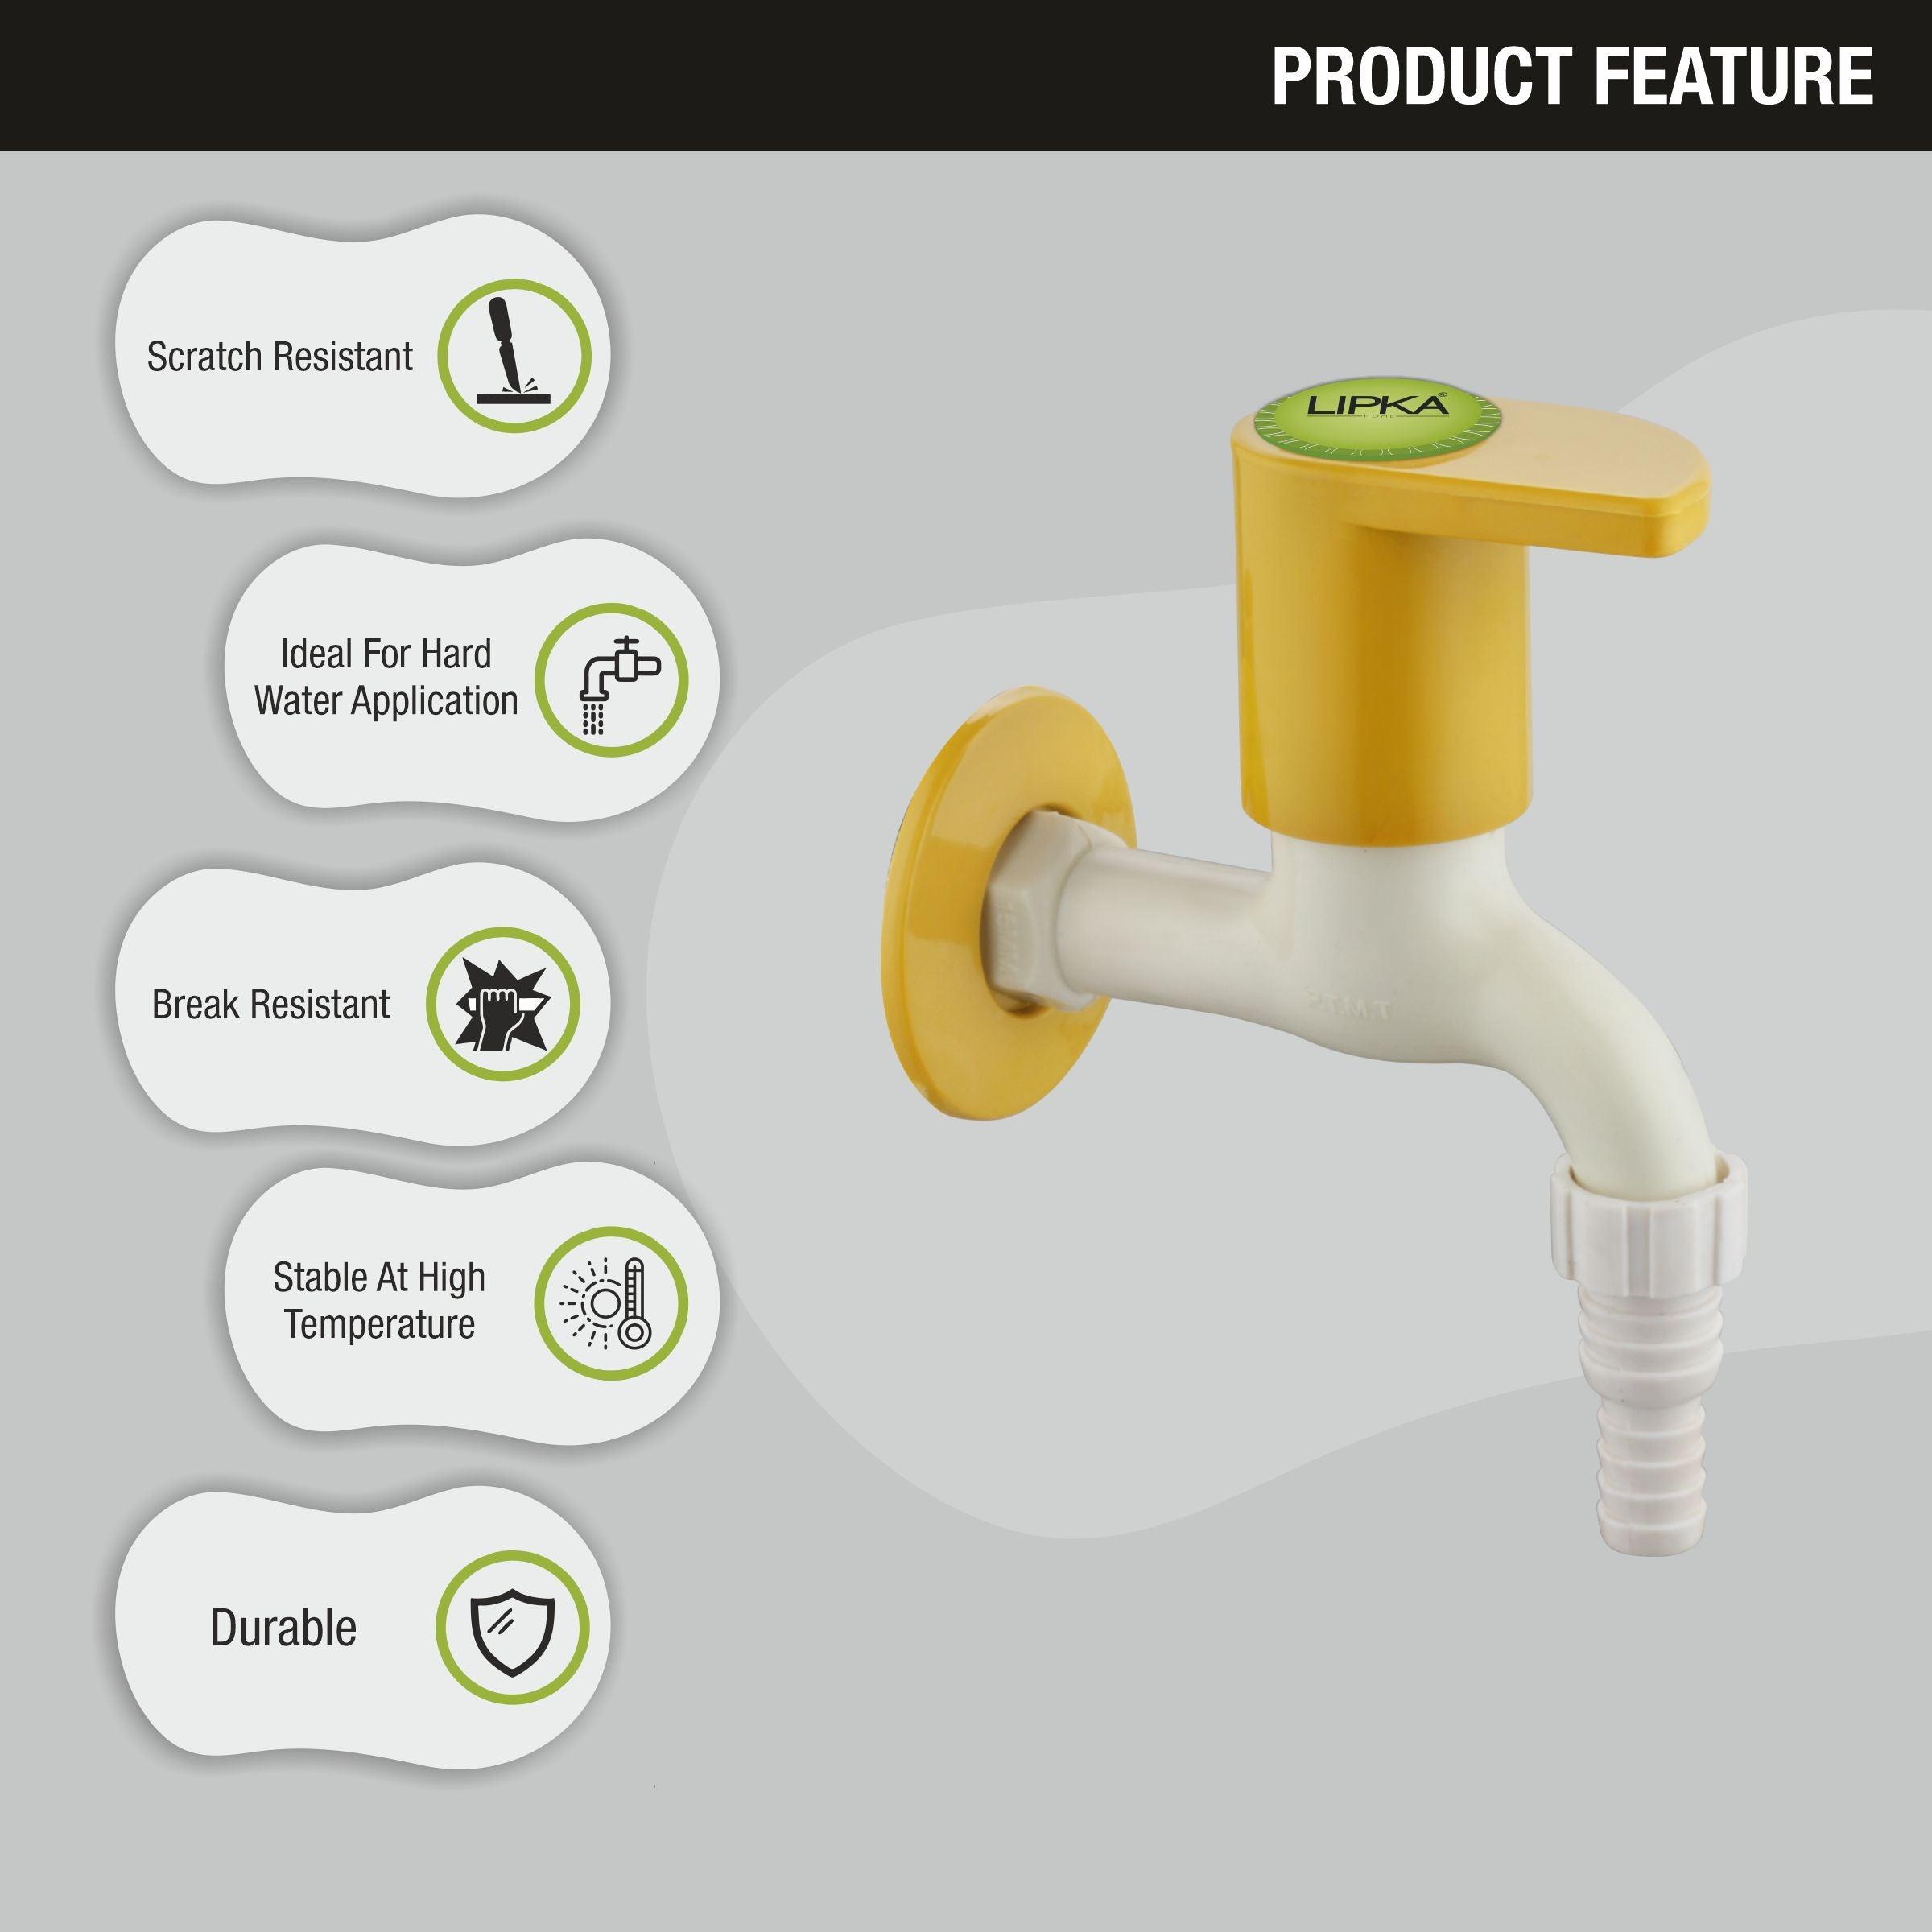 Pecker Nozzle Bib Tap PTMT Faucet features